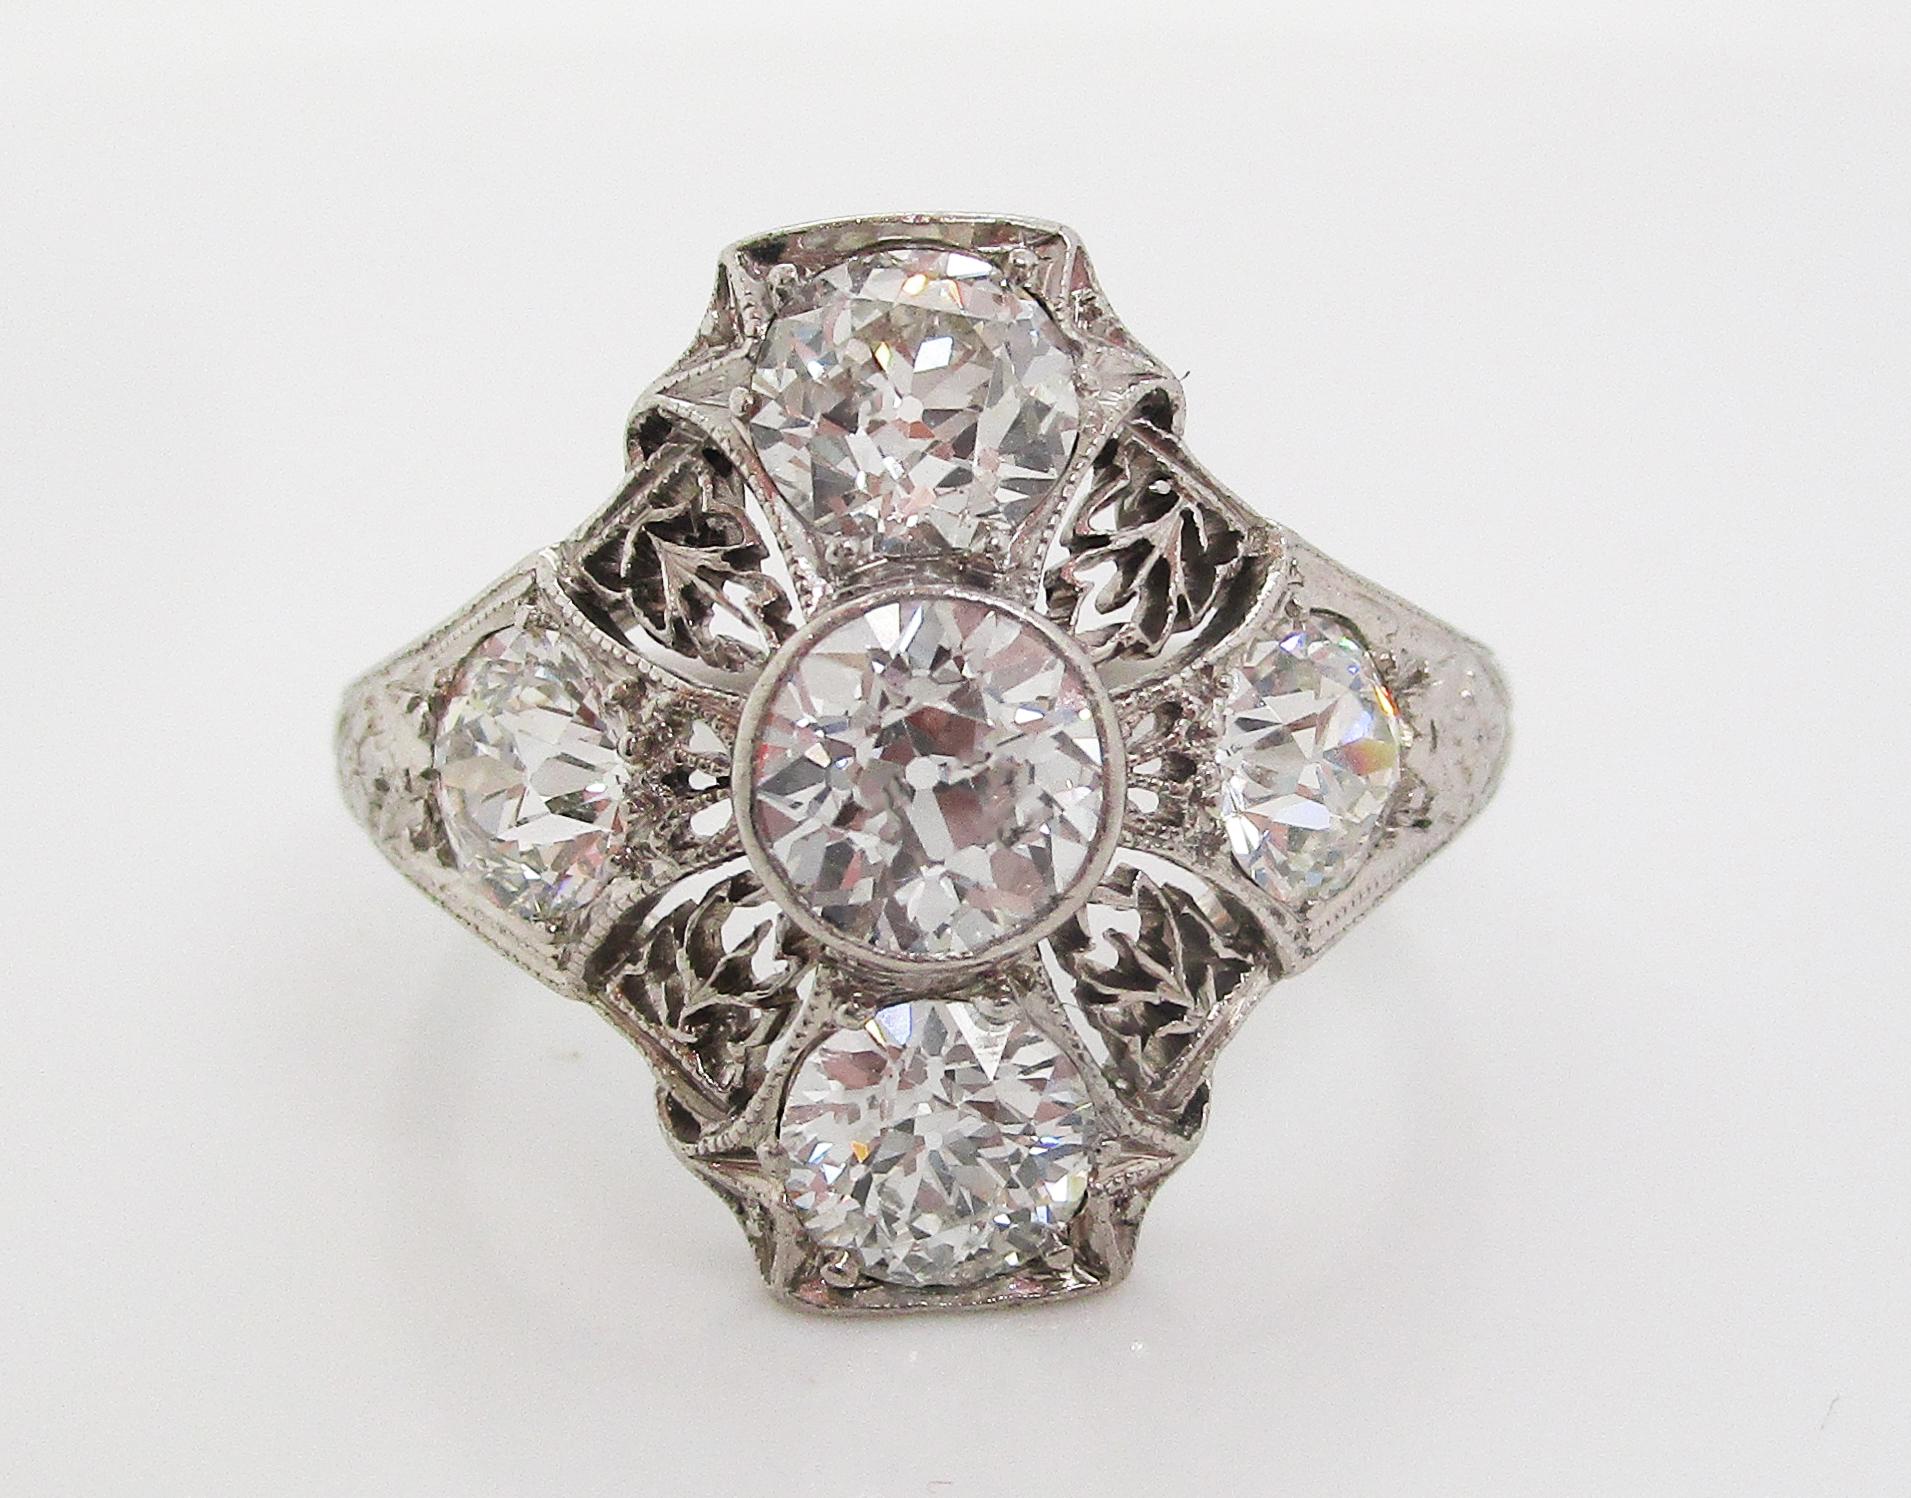 Dieser absolut bemerkenswerte Deco-Ring ist aus Platin mit feinen filigranen und eingravierten Details und verfügt über fünf atemberaubend feurige weiße Diamanten im Minenschliff. Das einzigartige Layout des Rings besteht aus einem Diamanten in der